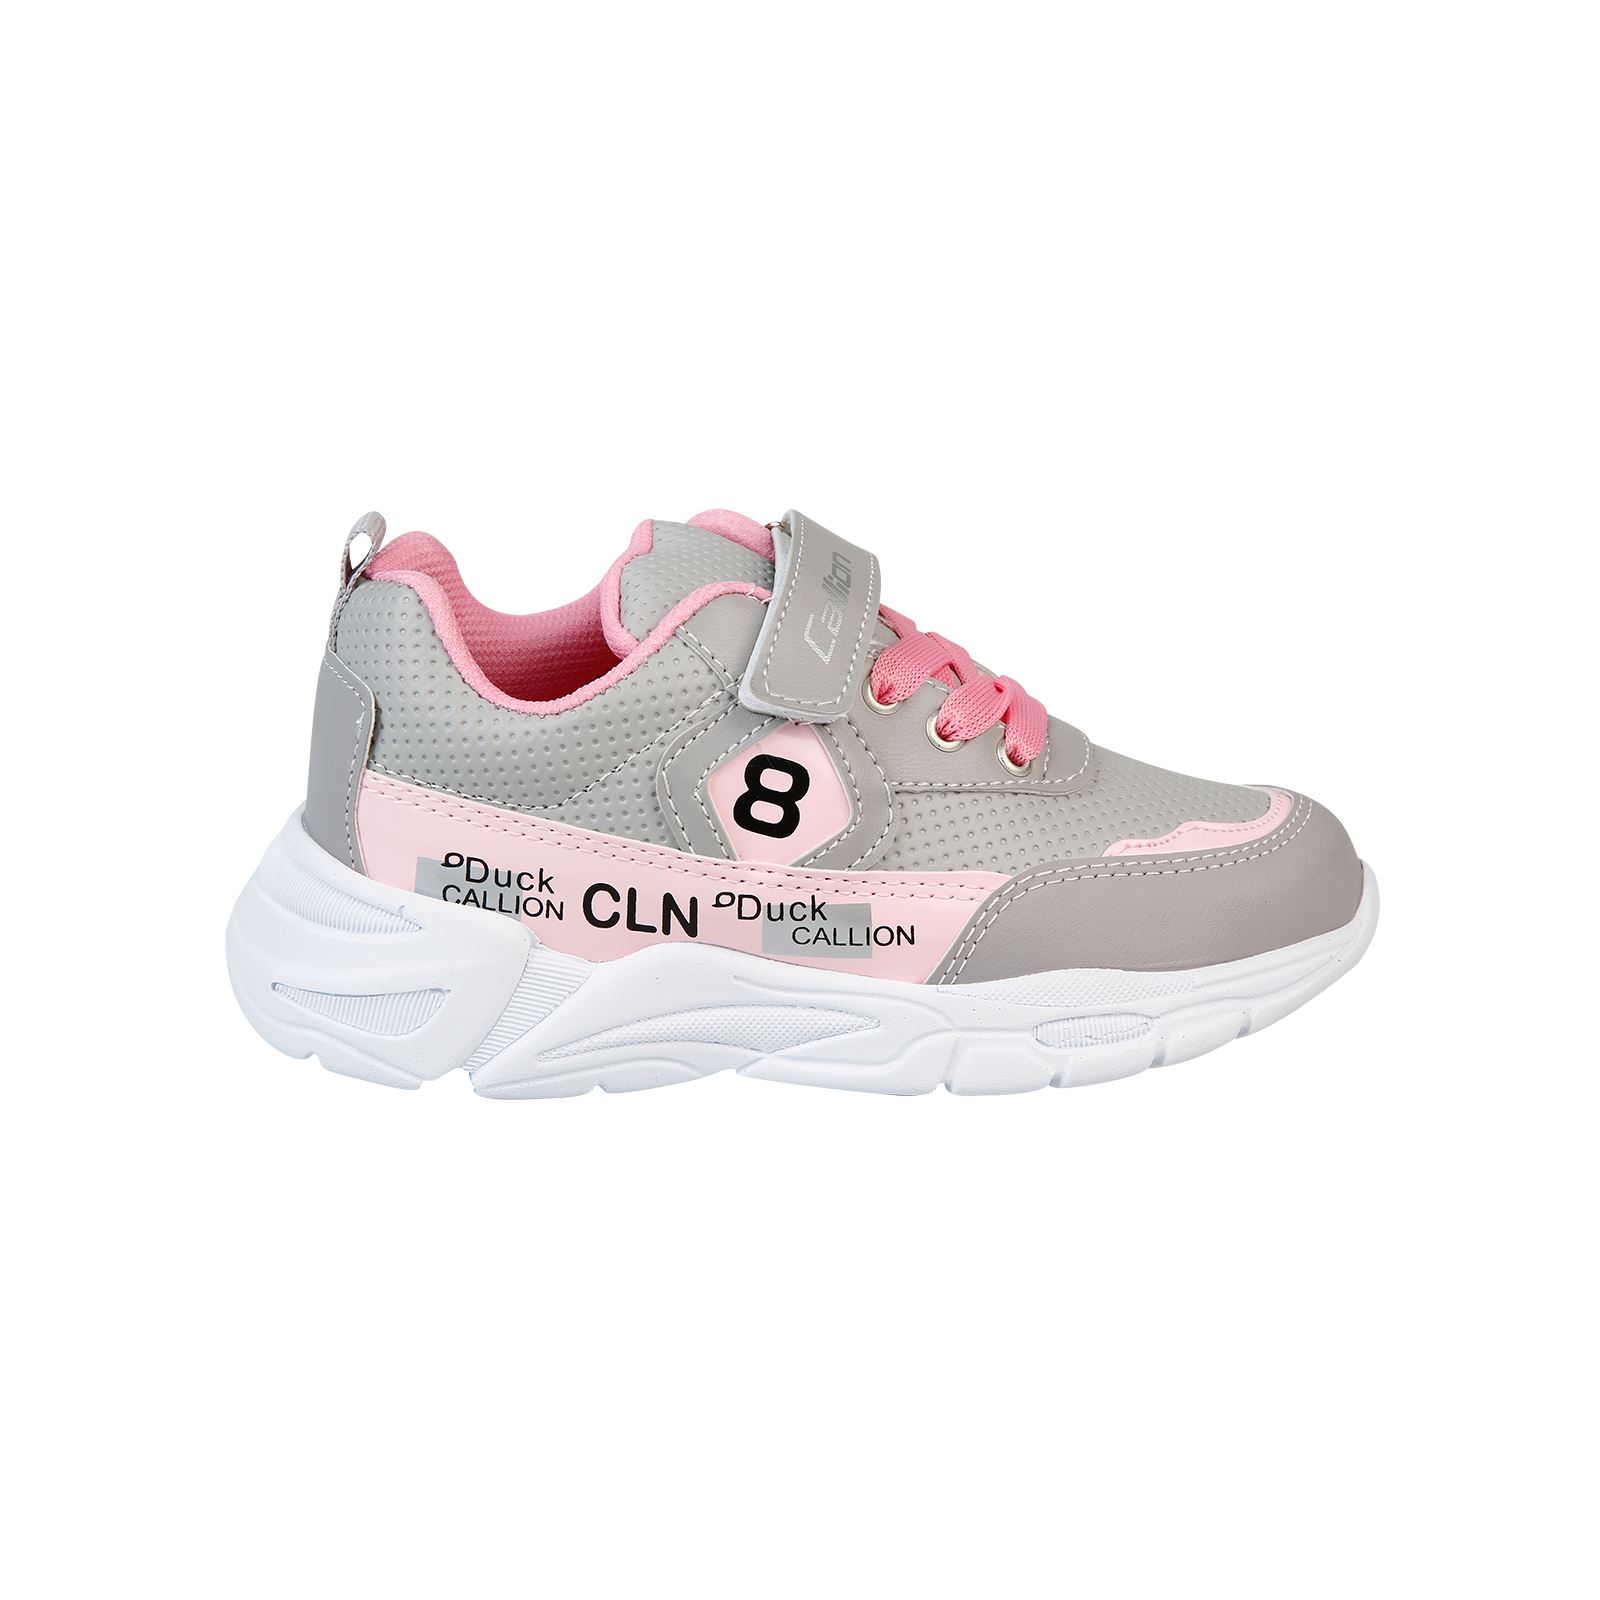 Callion Kız Çocuk Spor Ayakkabı 31-35 Numara Gri